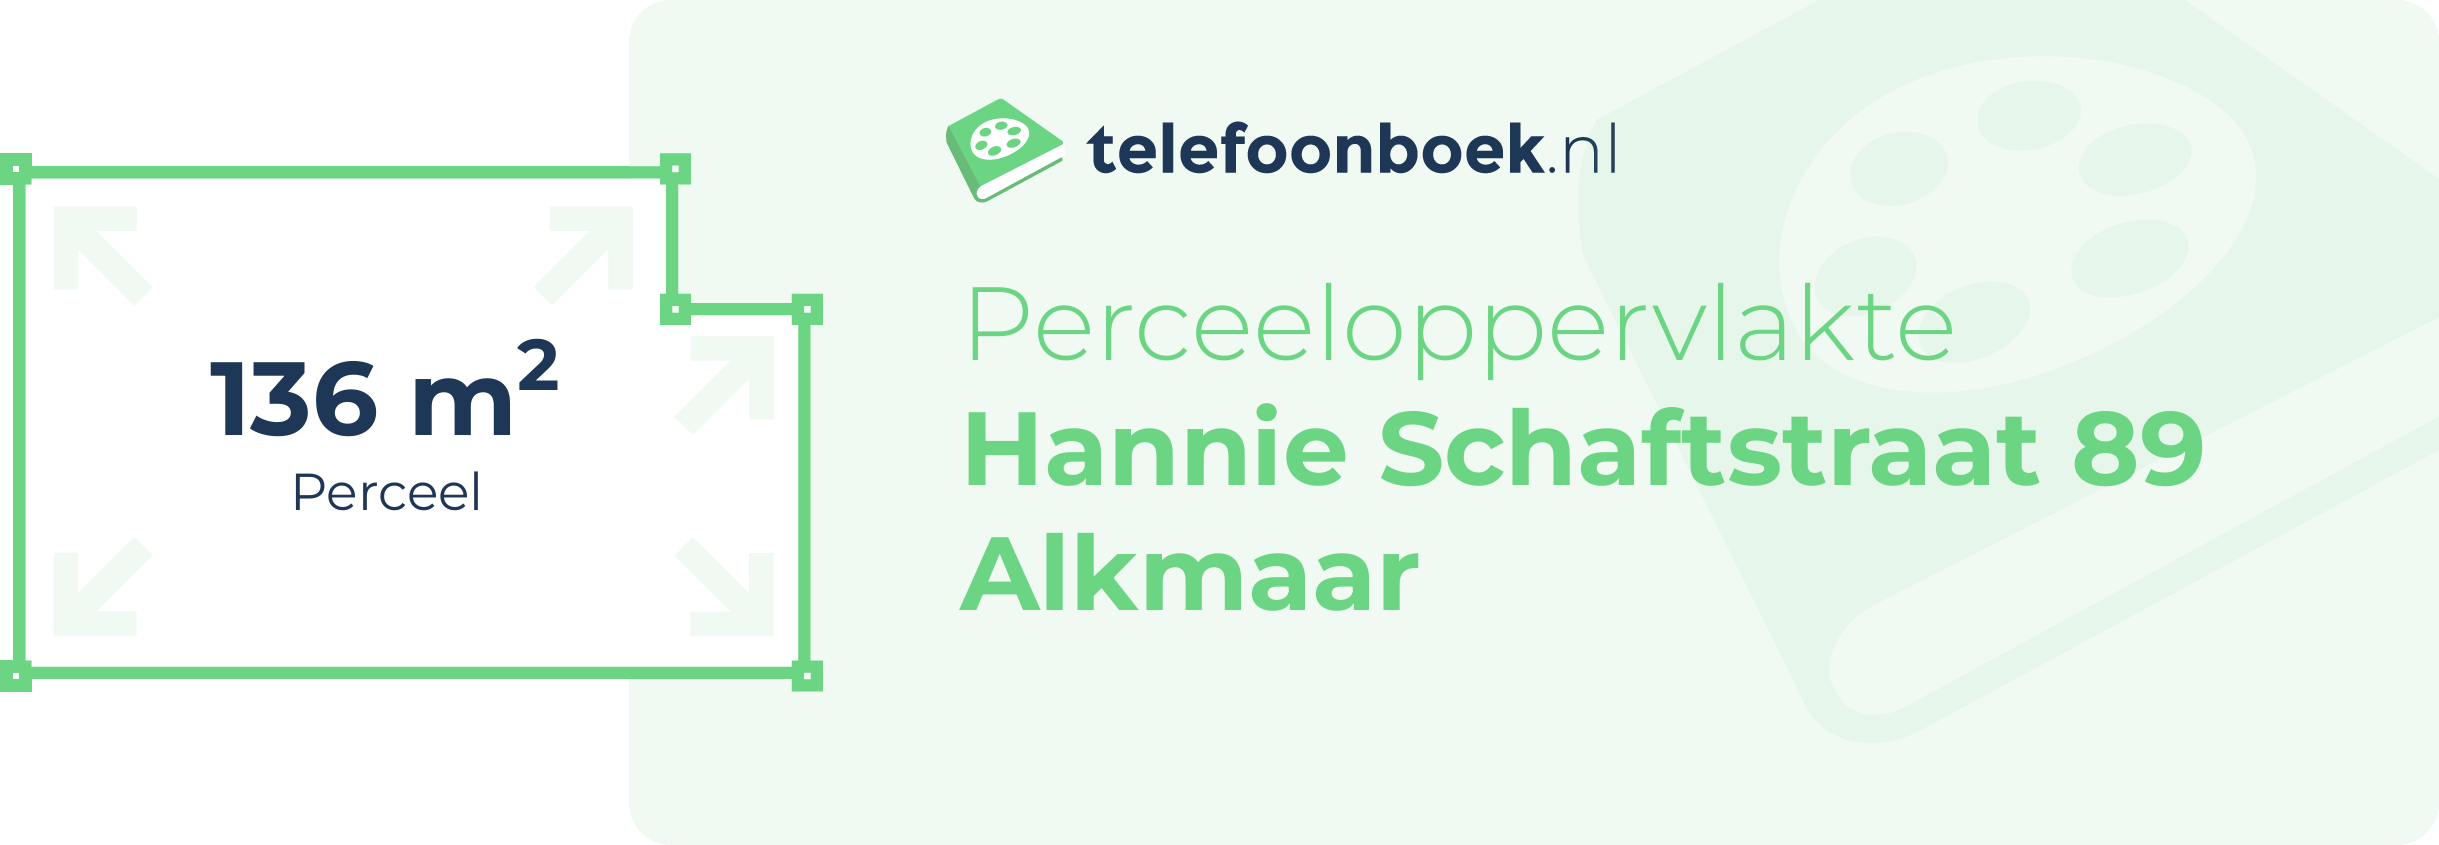 Perceeloppervlakte Hannie Schaftstraat 89 Alkmaar